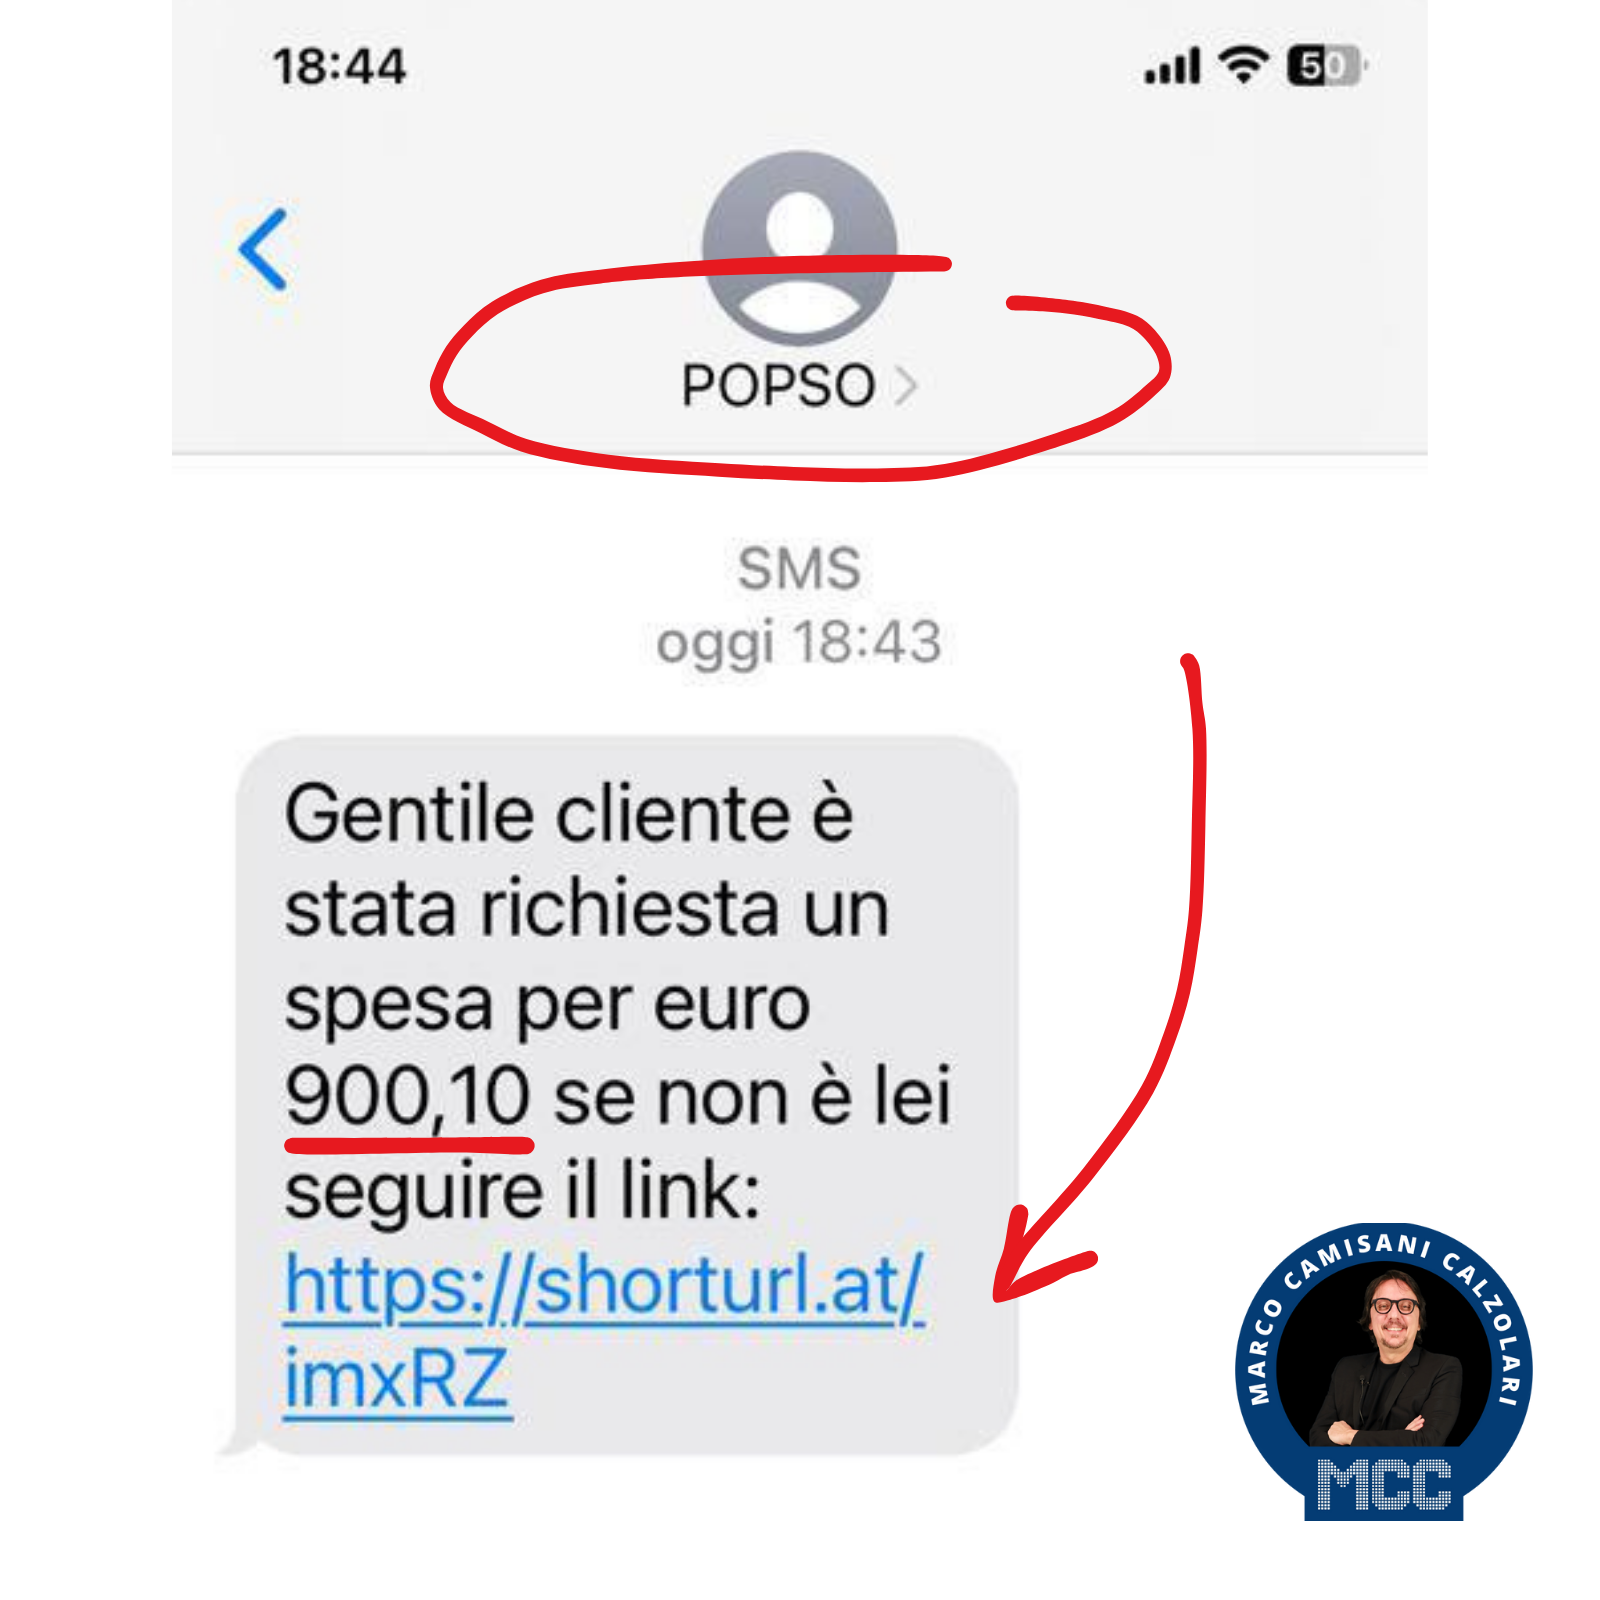 Attenzione al falso sms POPSO - Marco Camisani Calzolari